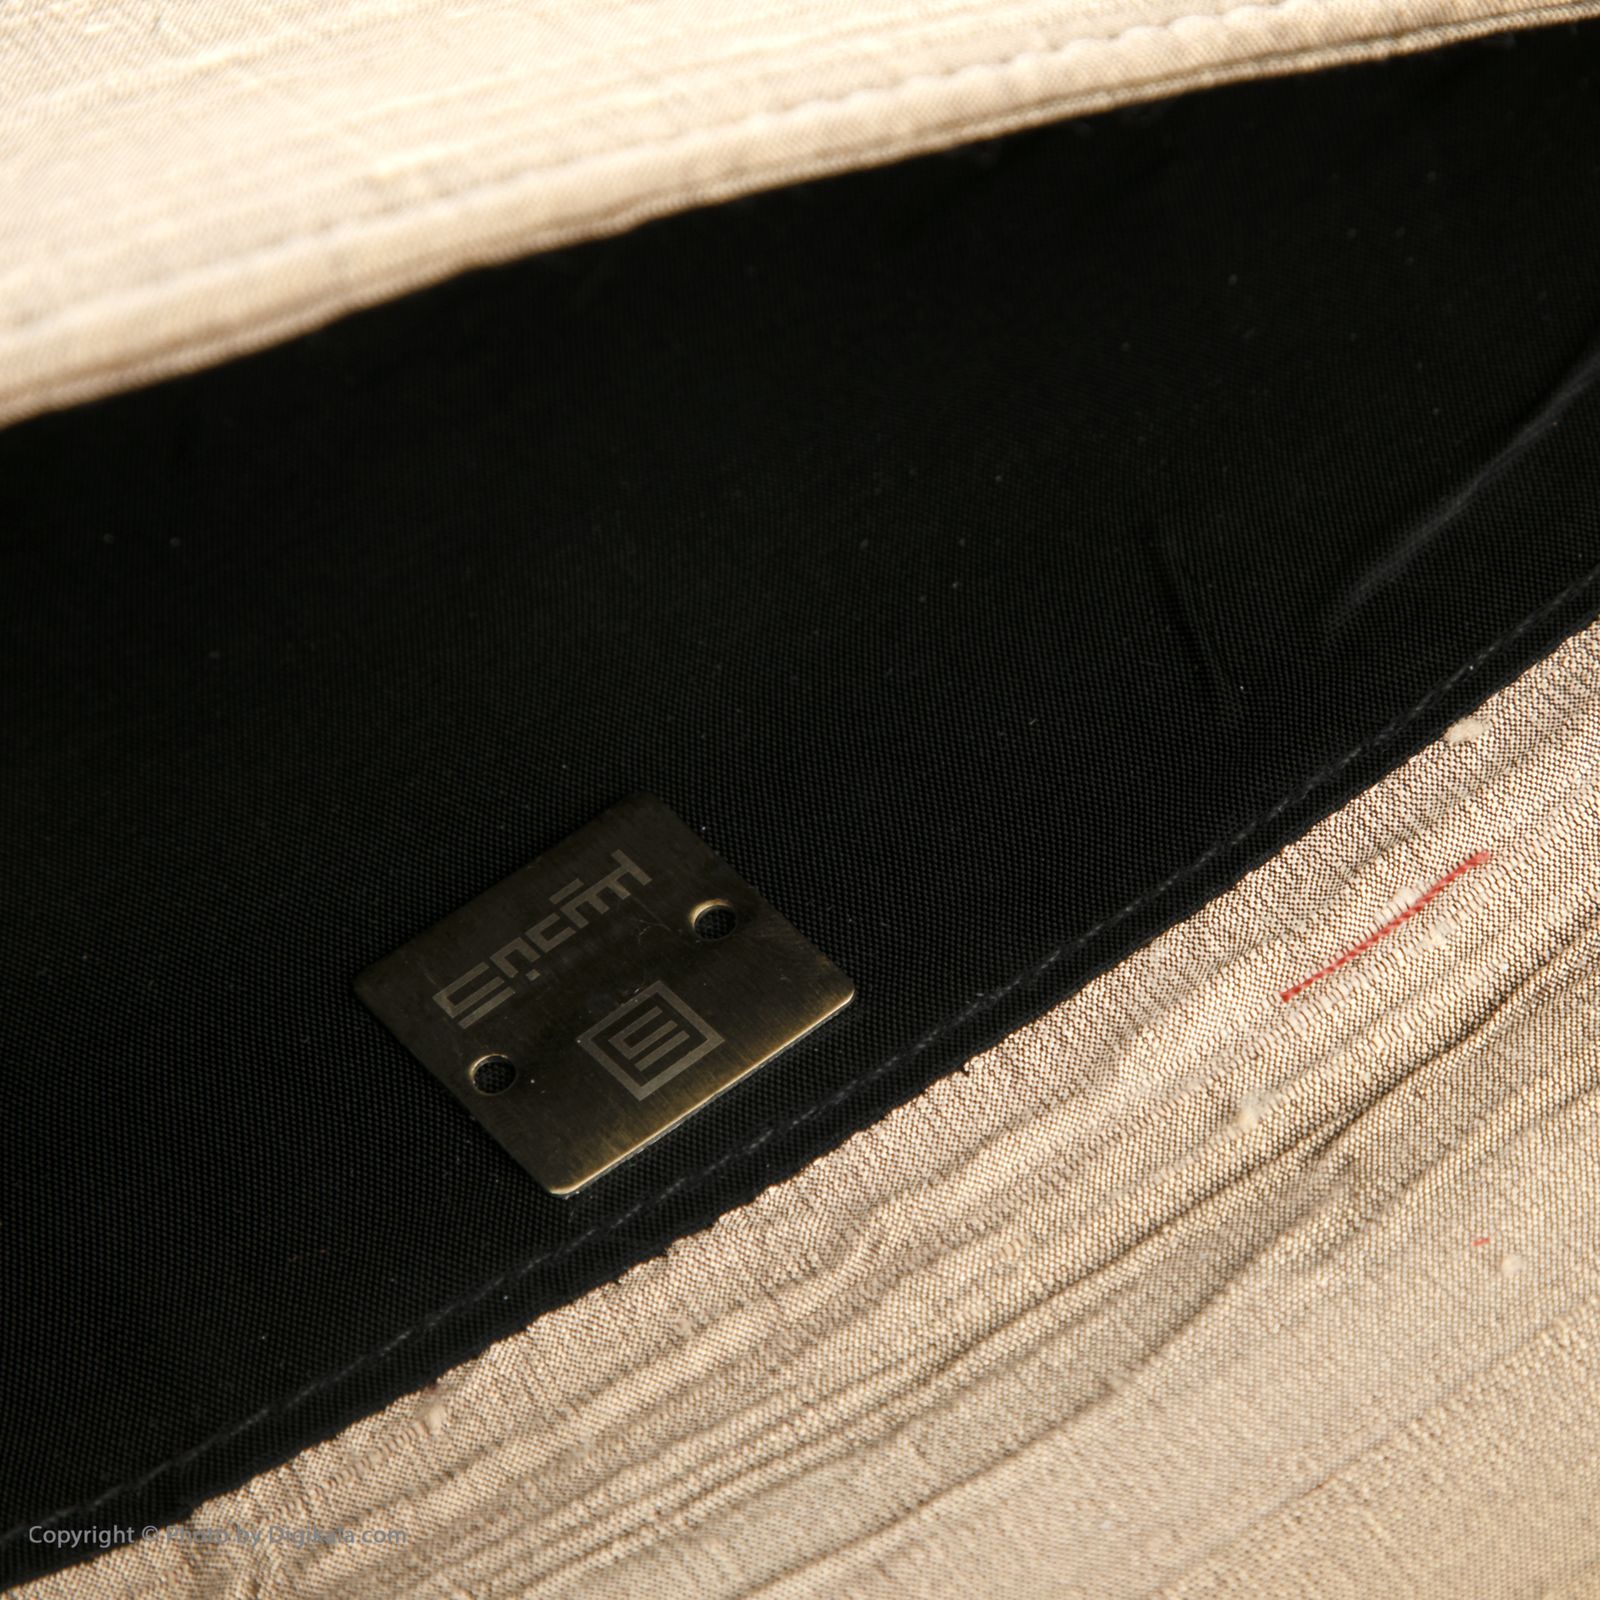 کیف دستی زنانه کندیس مدل 2001430 - قهوه اي - 4